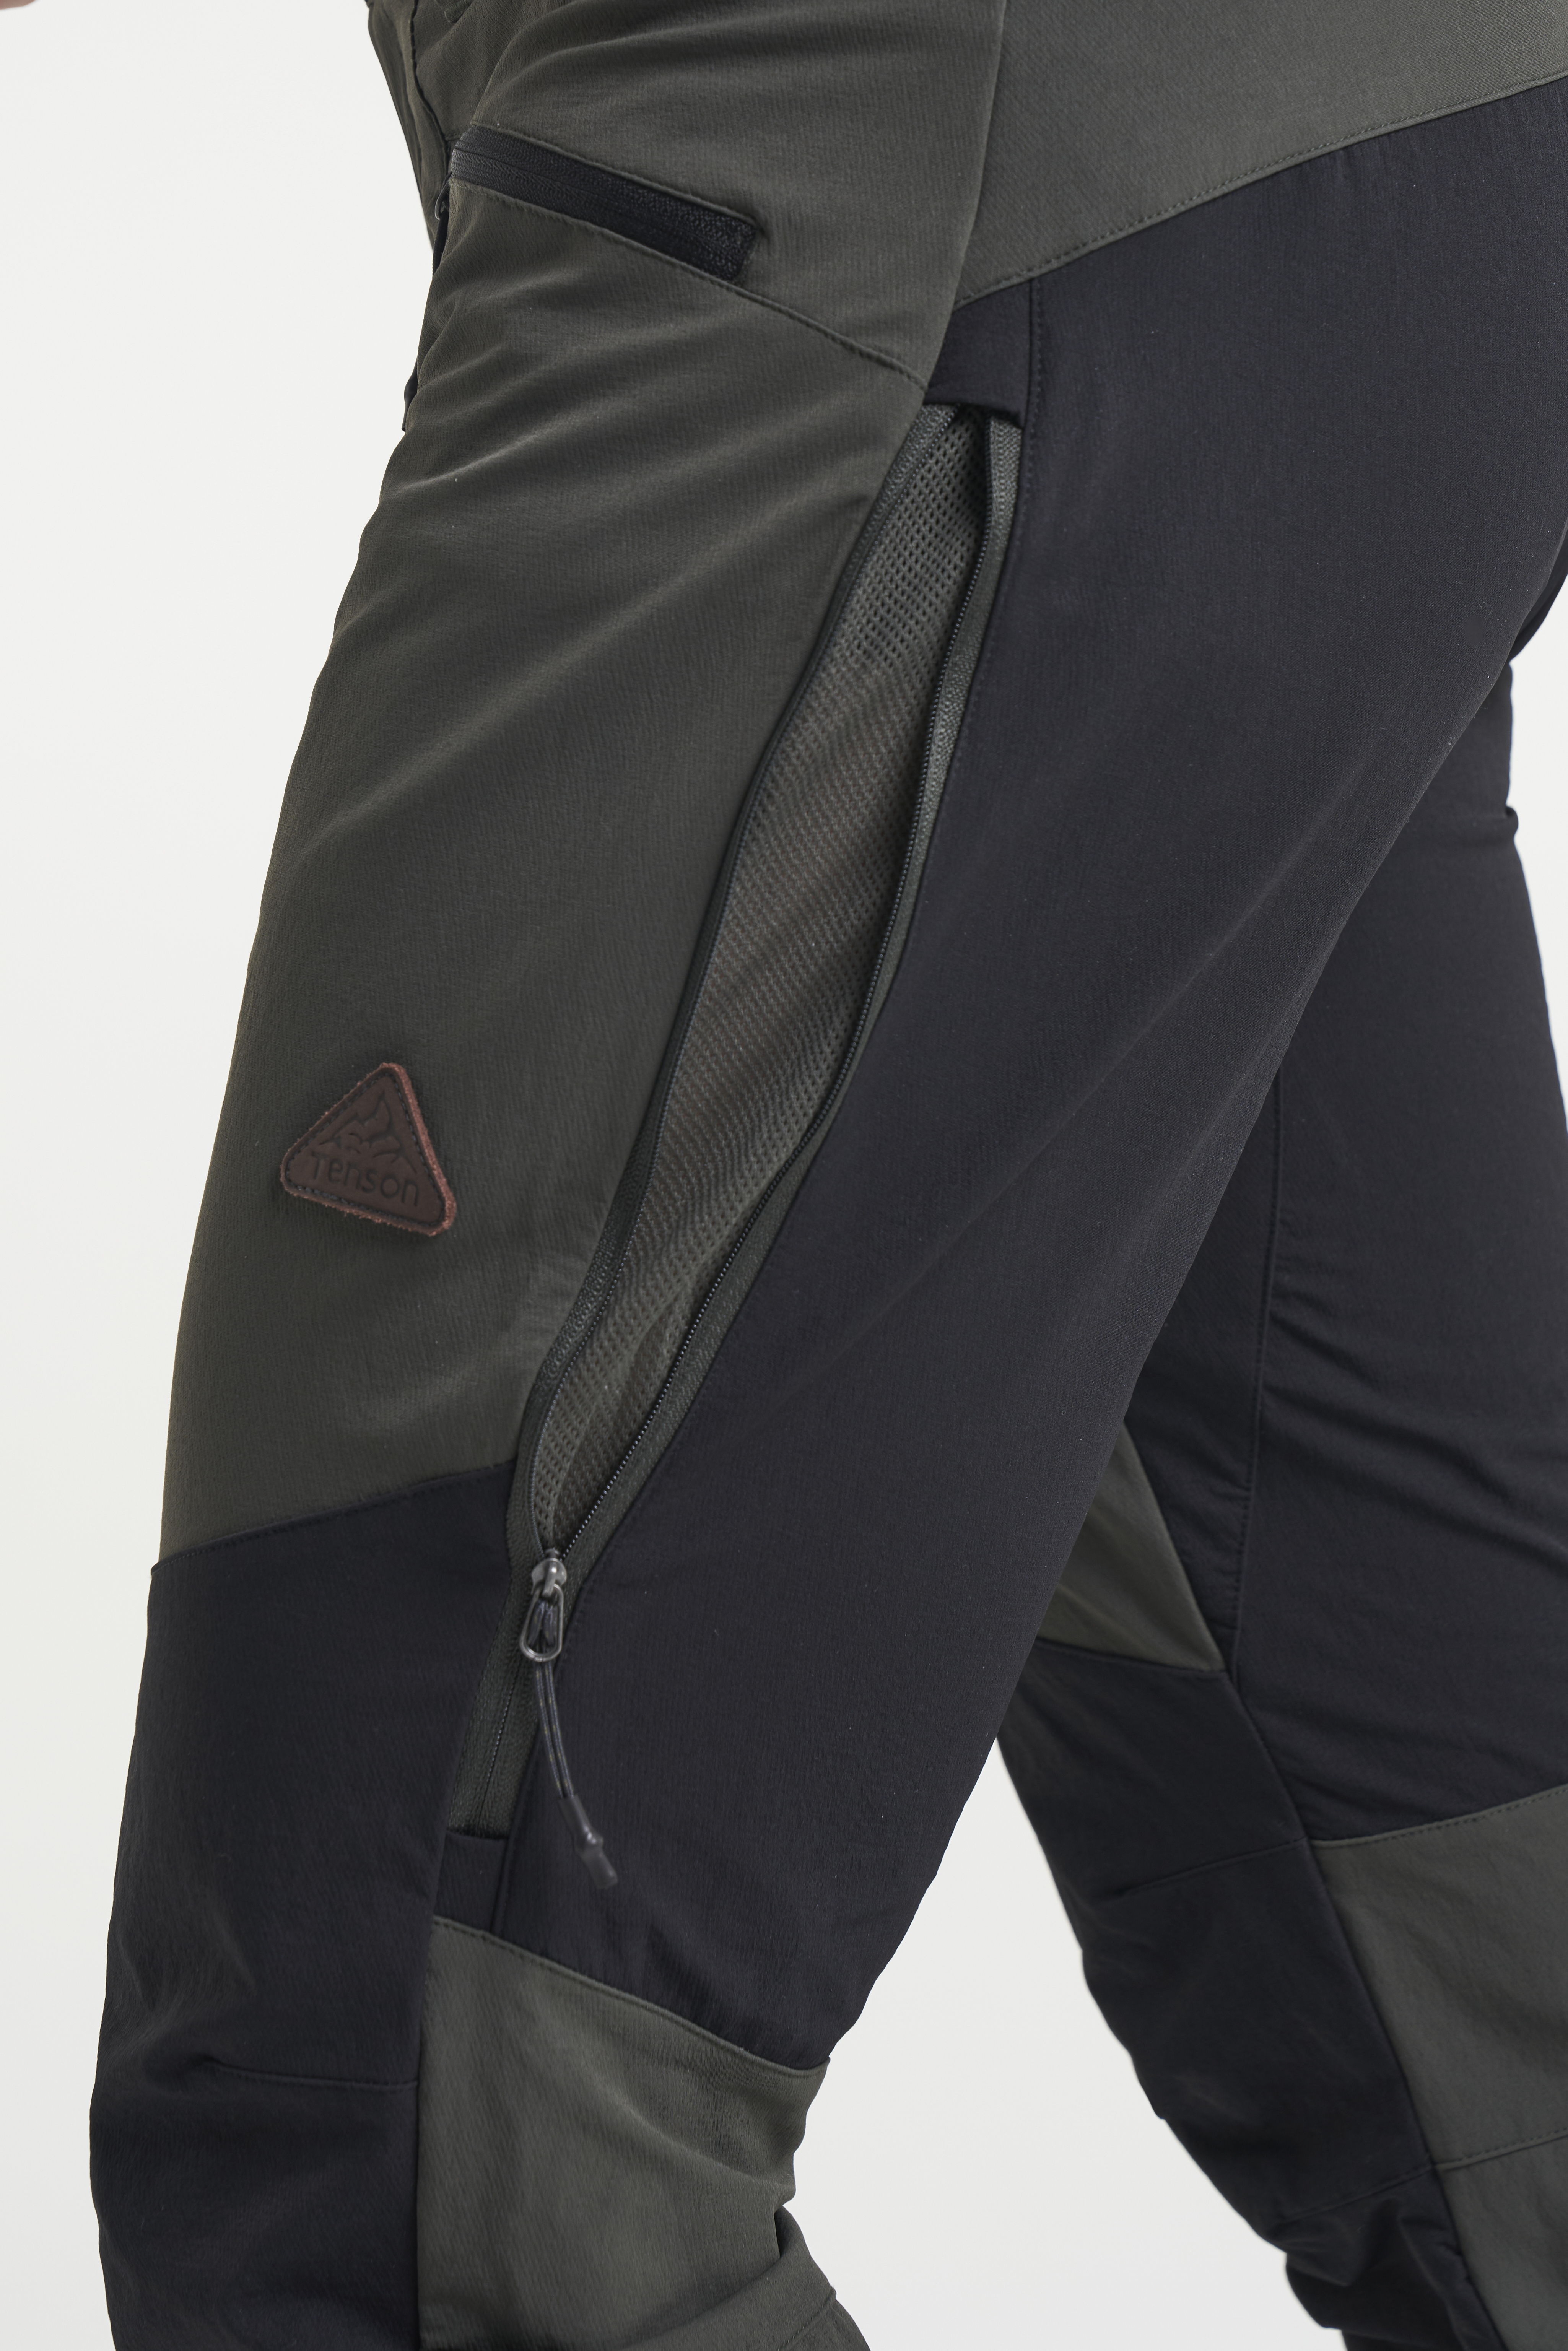 Forclaz Women's Mountain Trekking Trousers - Trek 500 - Khaki (UK 10 - EU40  (L31)) : Amazon.in: Clothing & Accessories